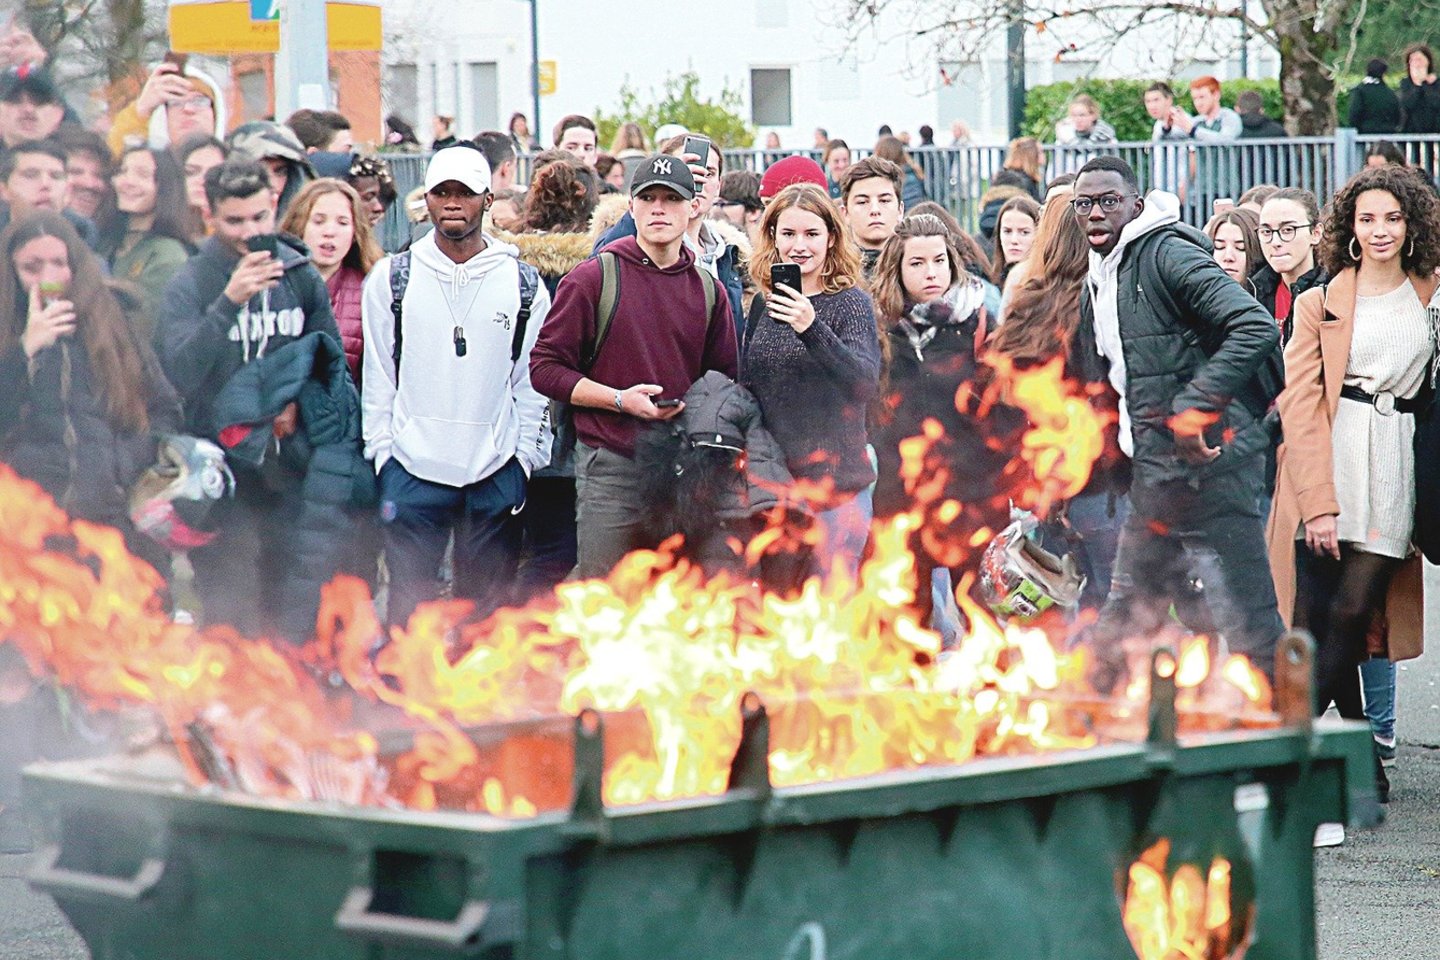 Prie protestuotojų prisijungė ir universitetų studentai bei moksleiviai, jie degino konteinerius.